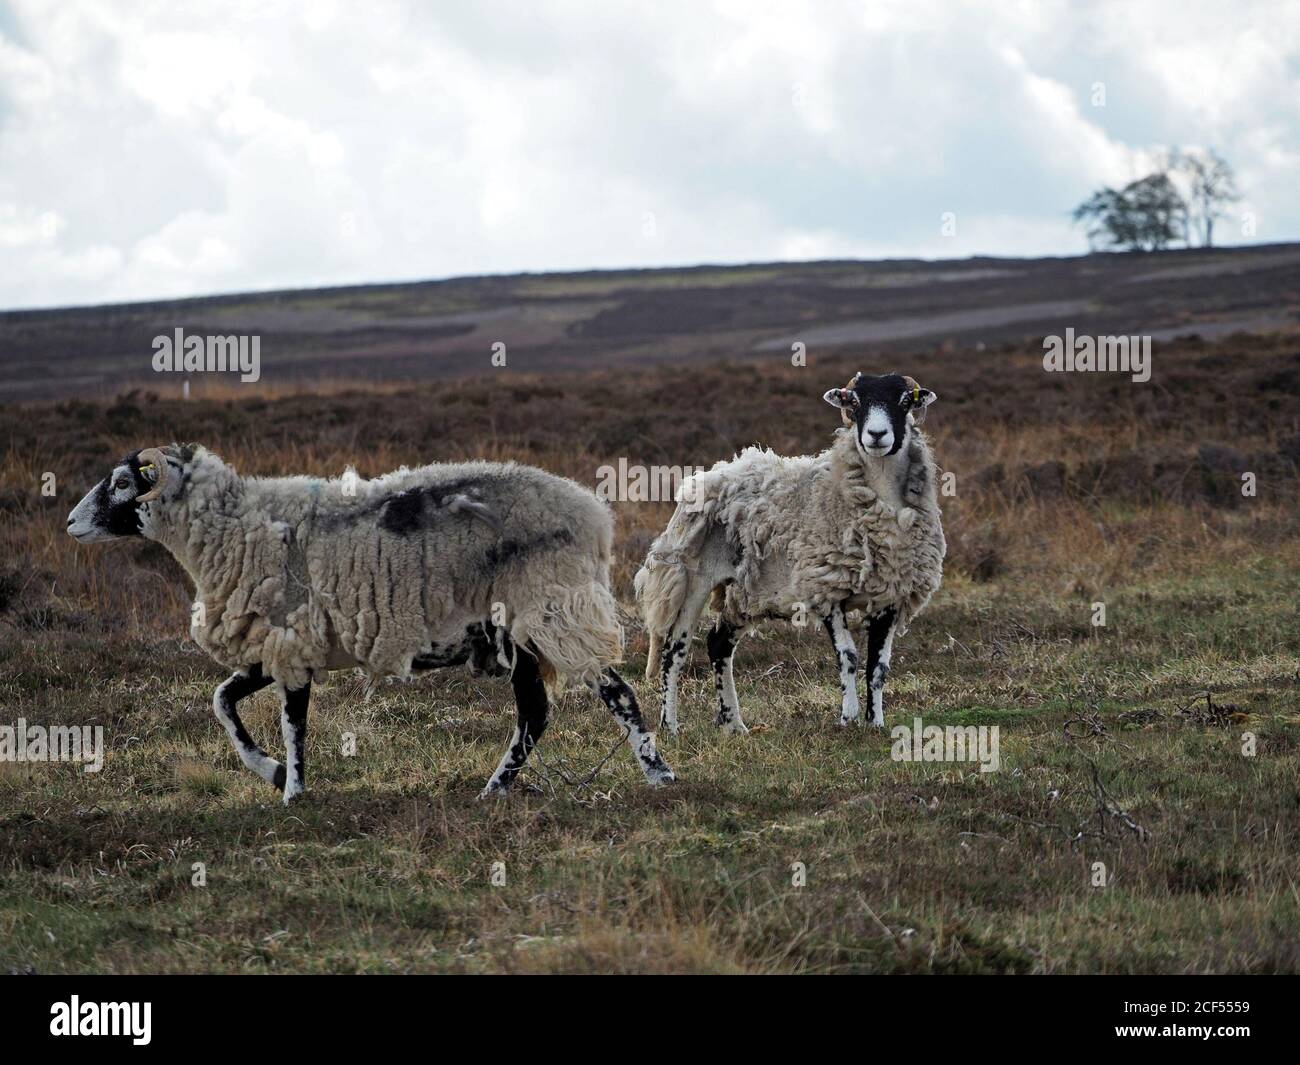 Deux moutons endurcis à fond noir adulte sur une botte de bruyère sauvage et sombre qui se motent naturellement de la polaire alors que le printemps se tourne vers l'été à Cumbria, Angleterre, Royaume-Uni Banque D'Images